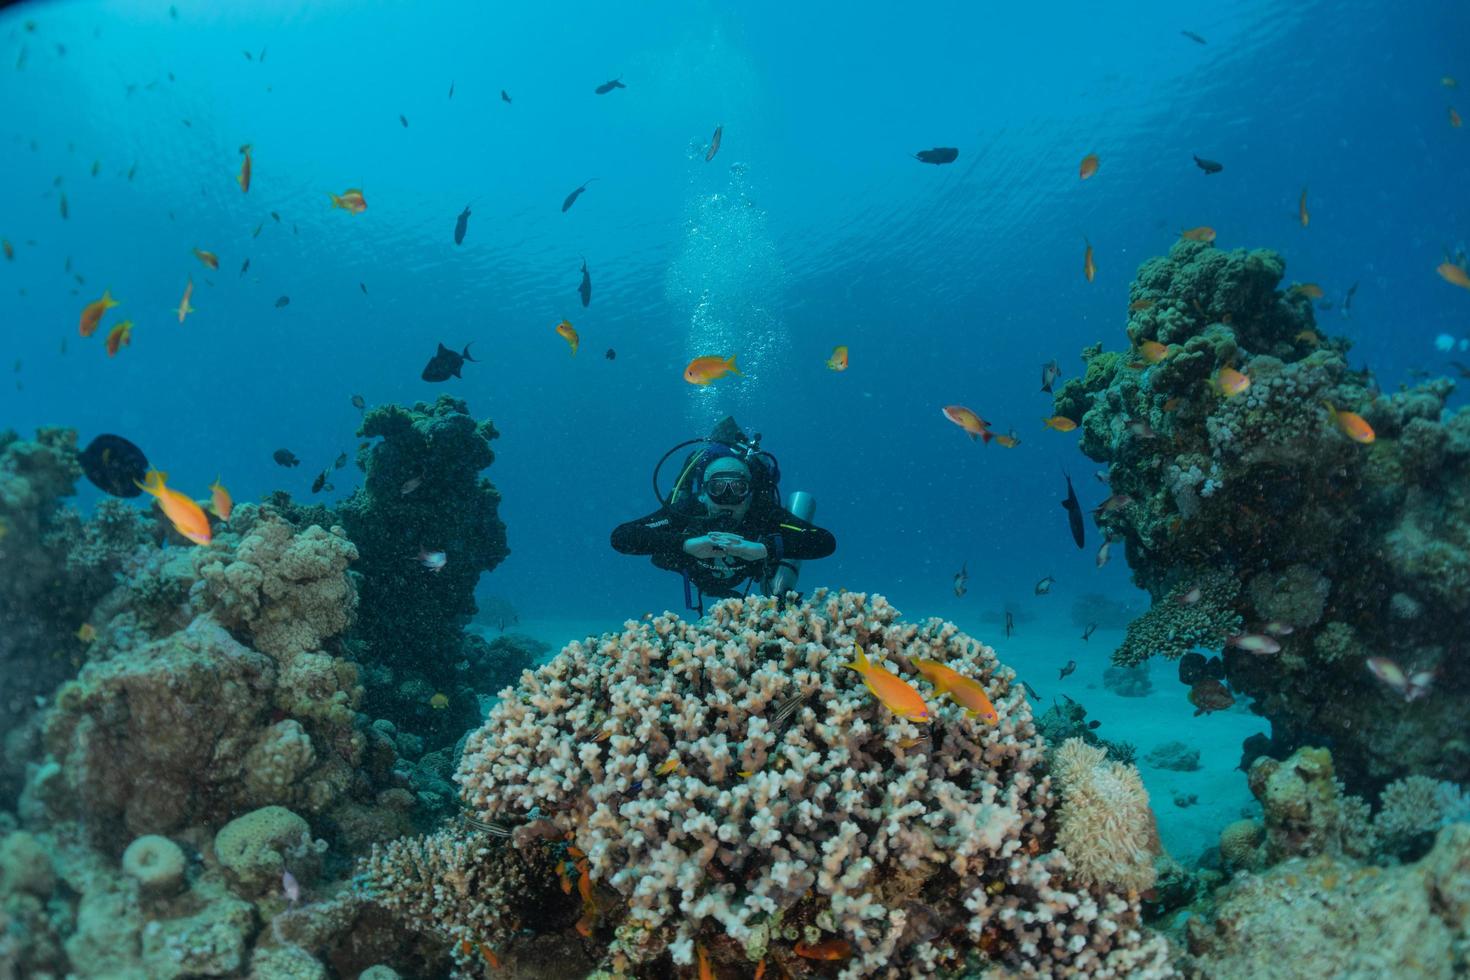 korallrev och vattenväxter i Röda havet, eilat israel foto